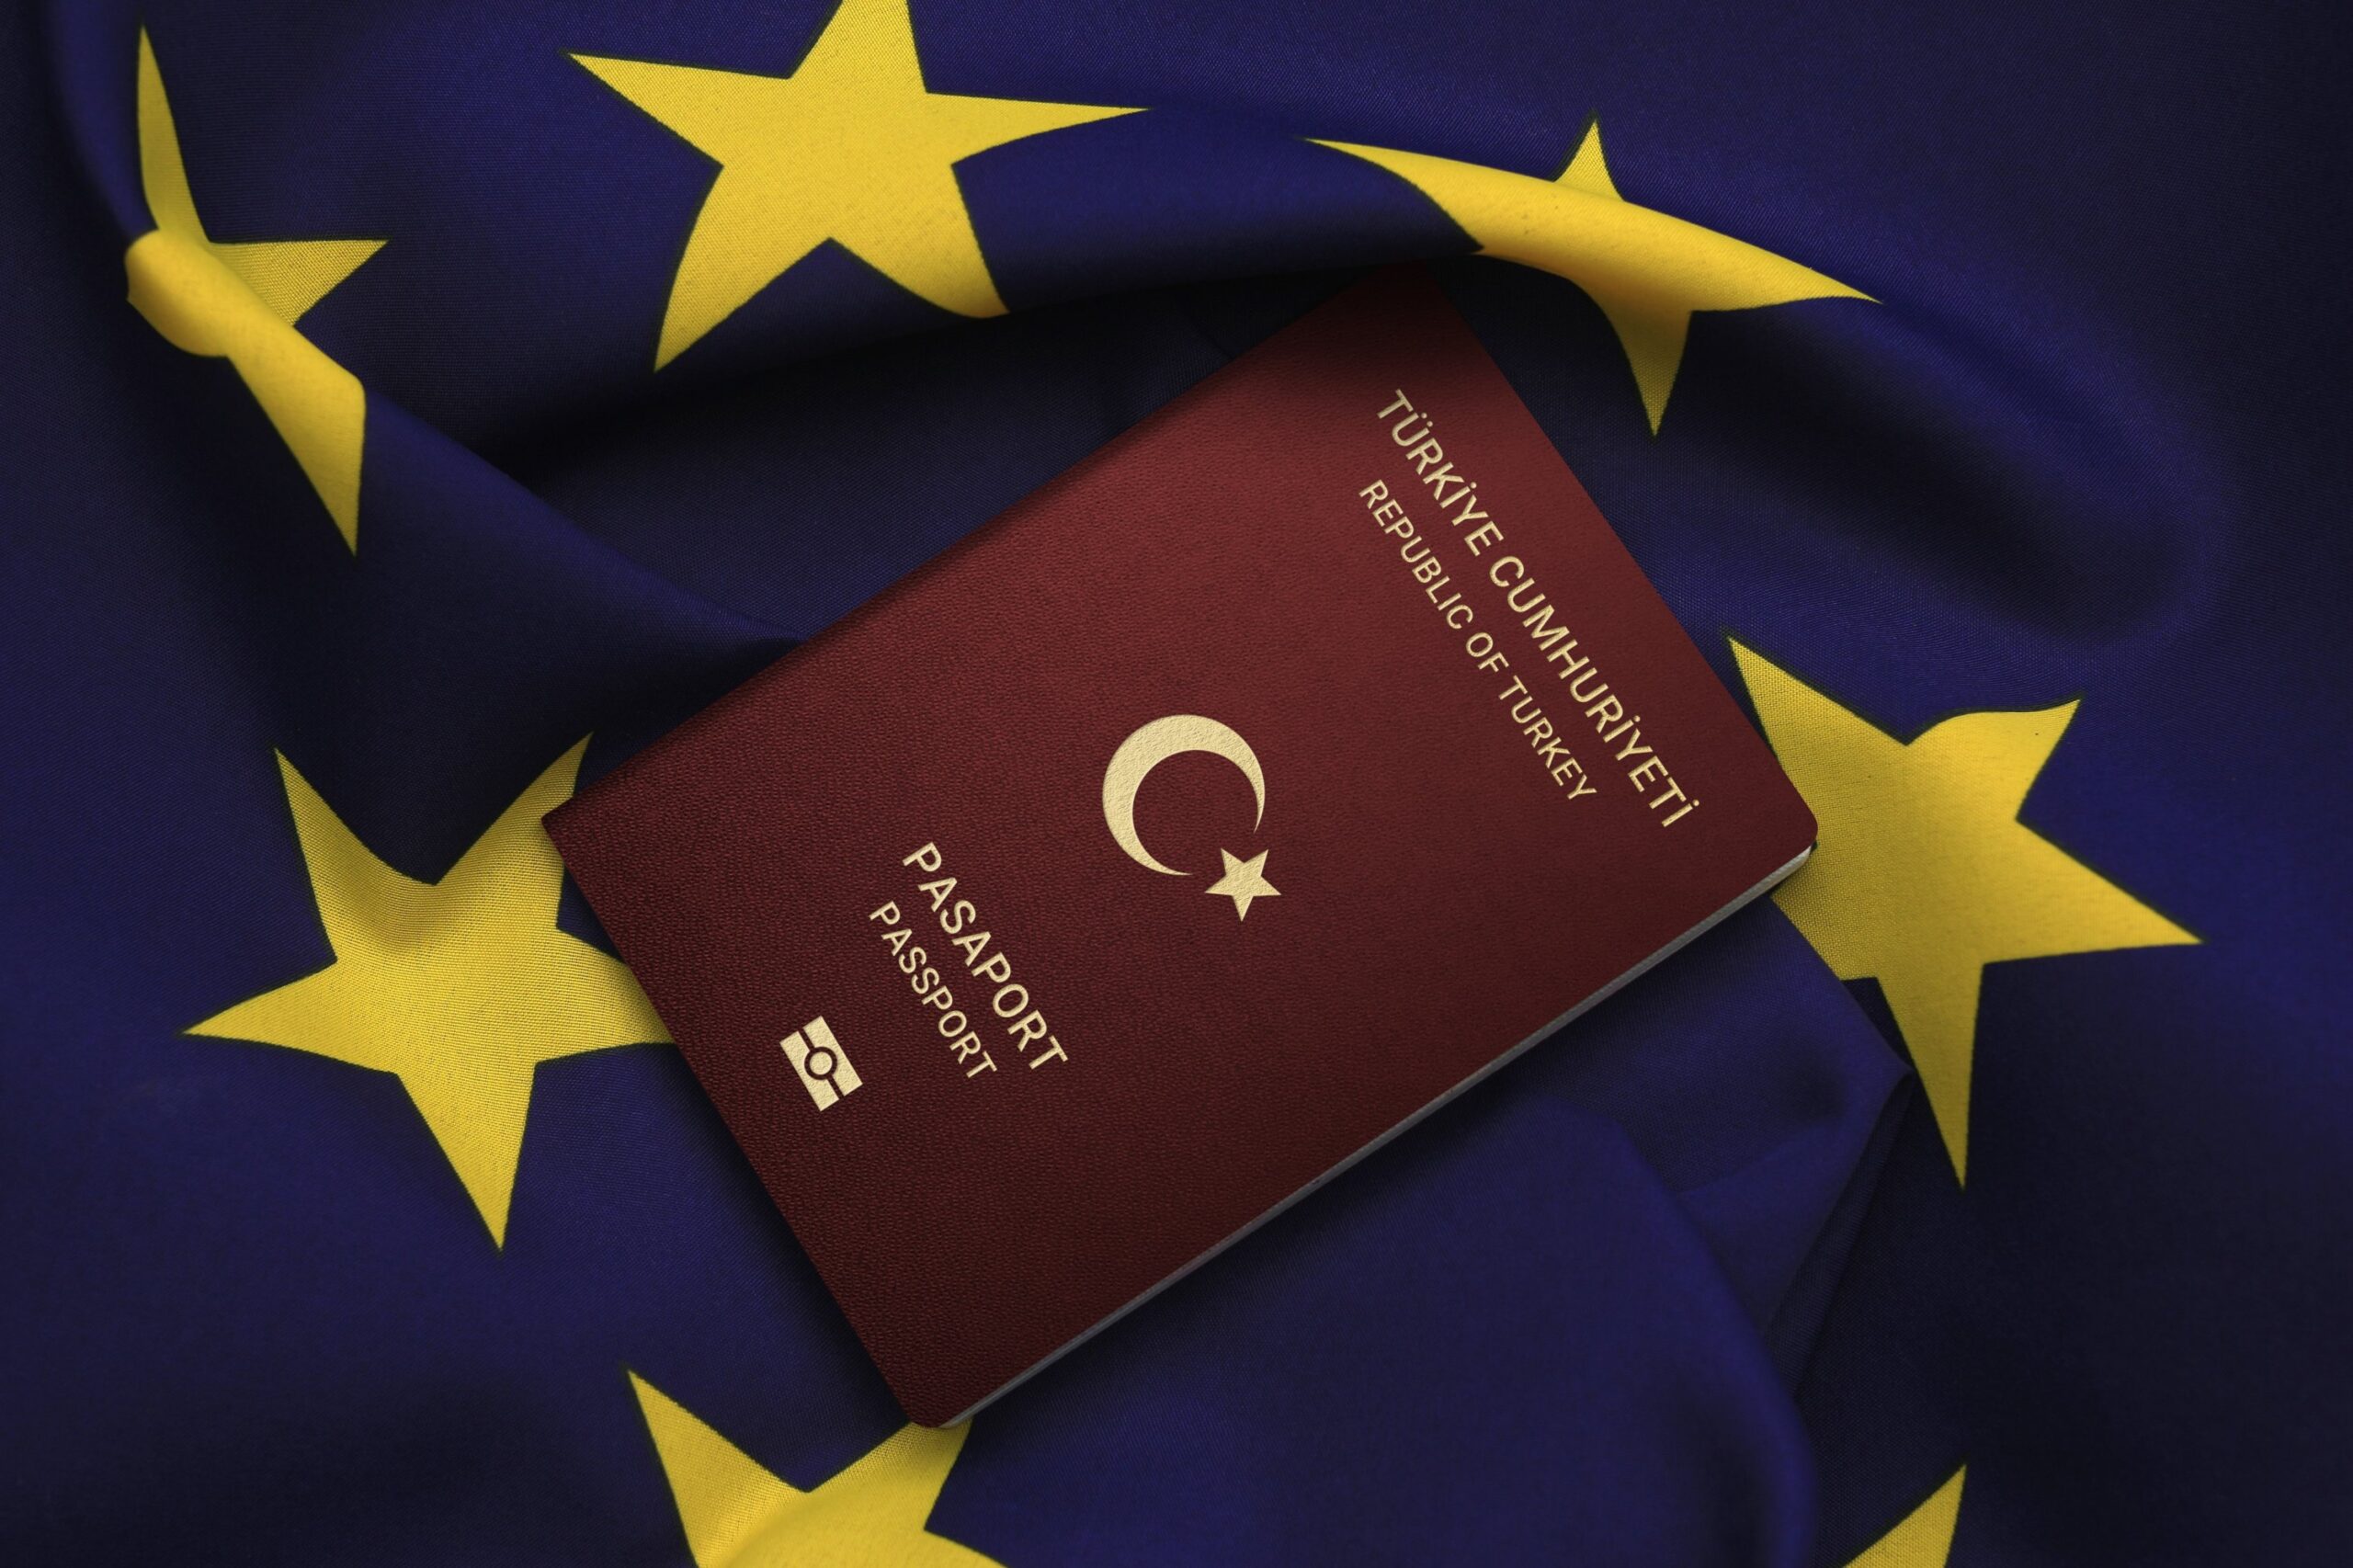 Turkey Visa